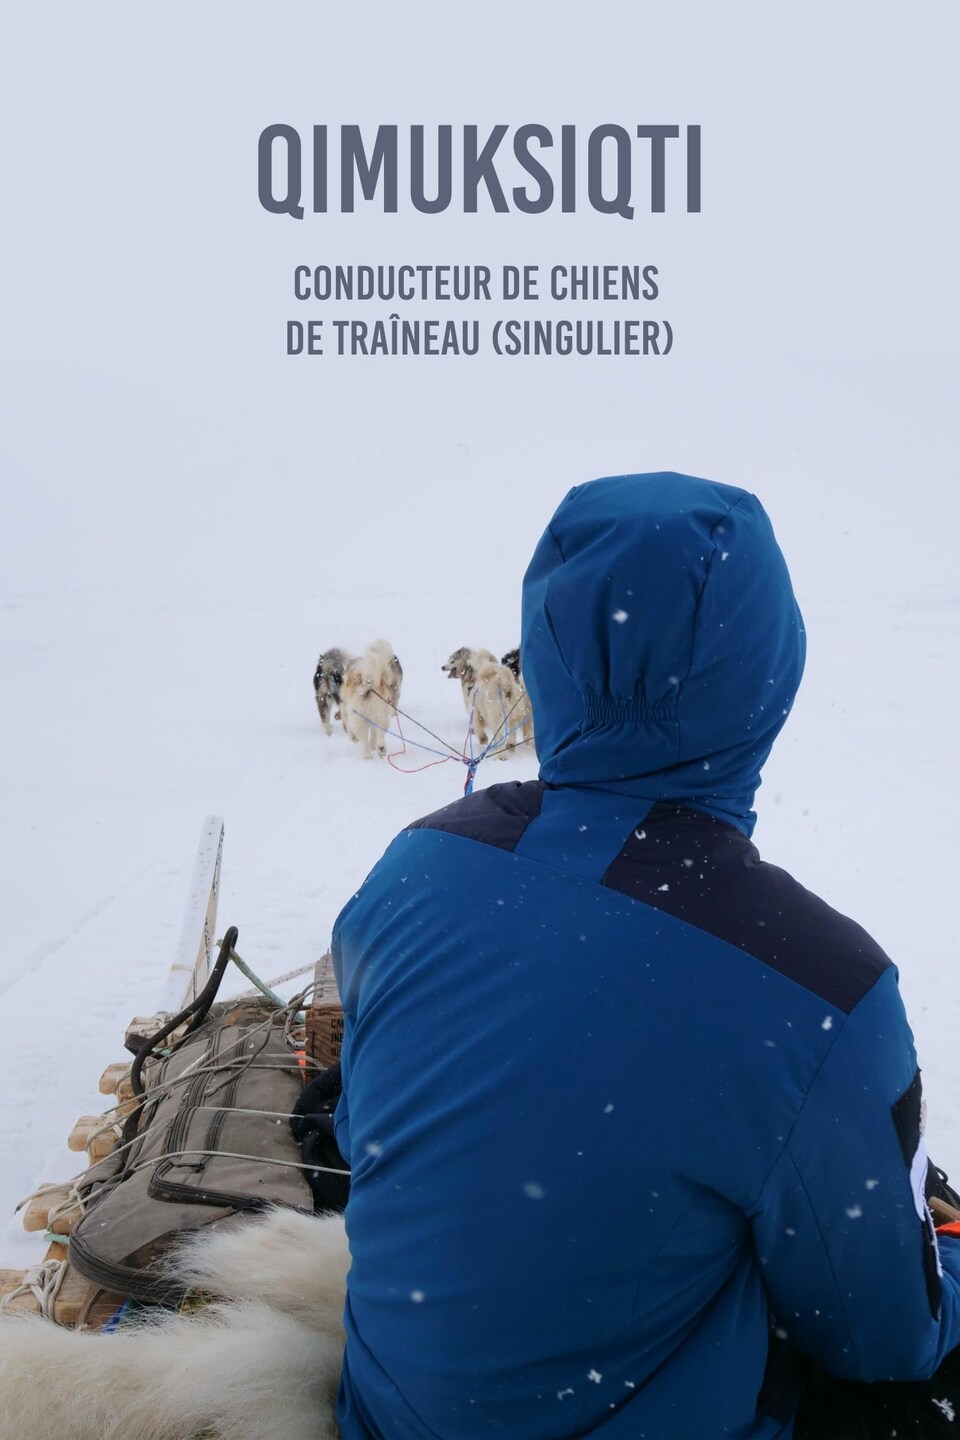 Le mot en inuktitut « qimuksiqti » et sa traduction,conducteur de chiens de traîneau au singulier écrit sur une photo de Devon Manik de dos en train de conduire son traîneau à chien, au mois de juin à Resolute Bay, dans le nord du Nunavut.